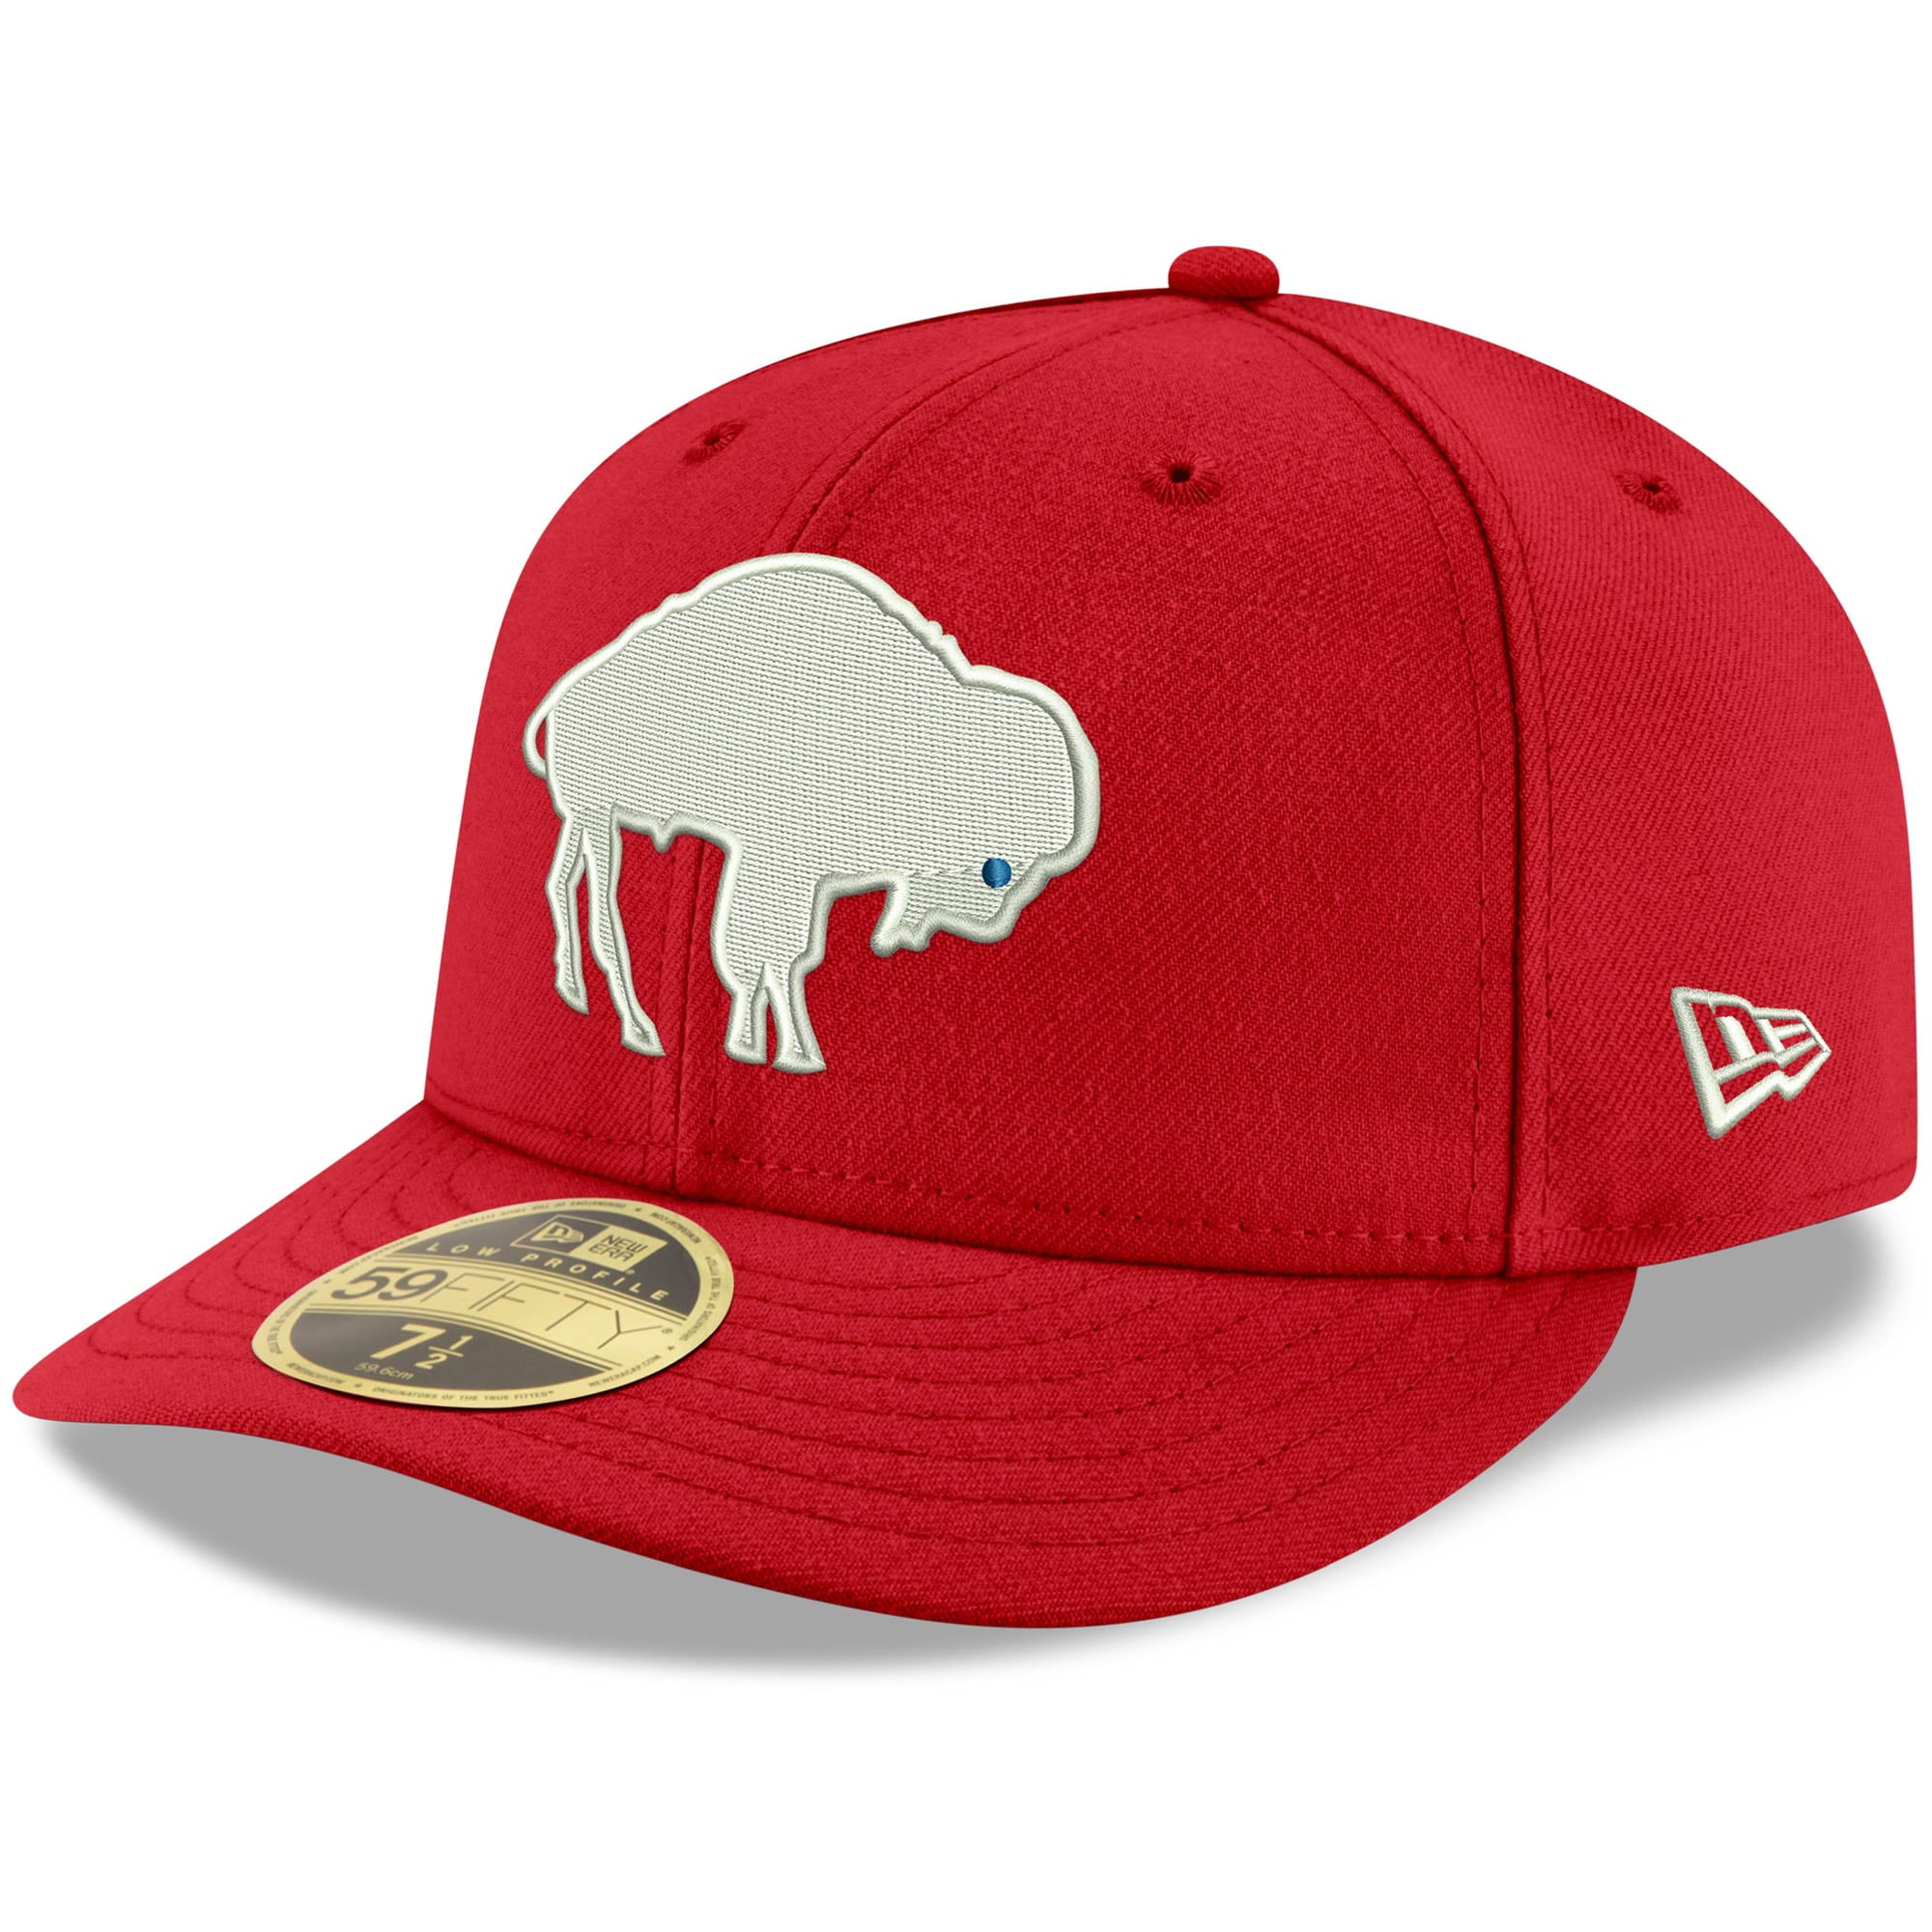 Men's New Era Red Buffalo Bills Omaha 